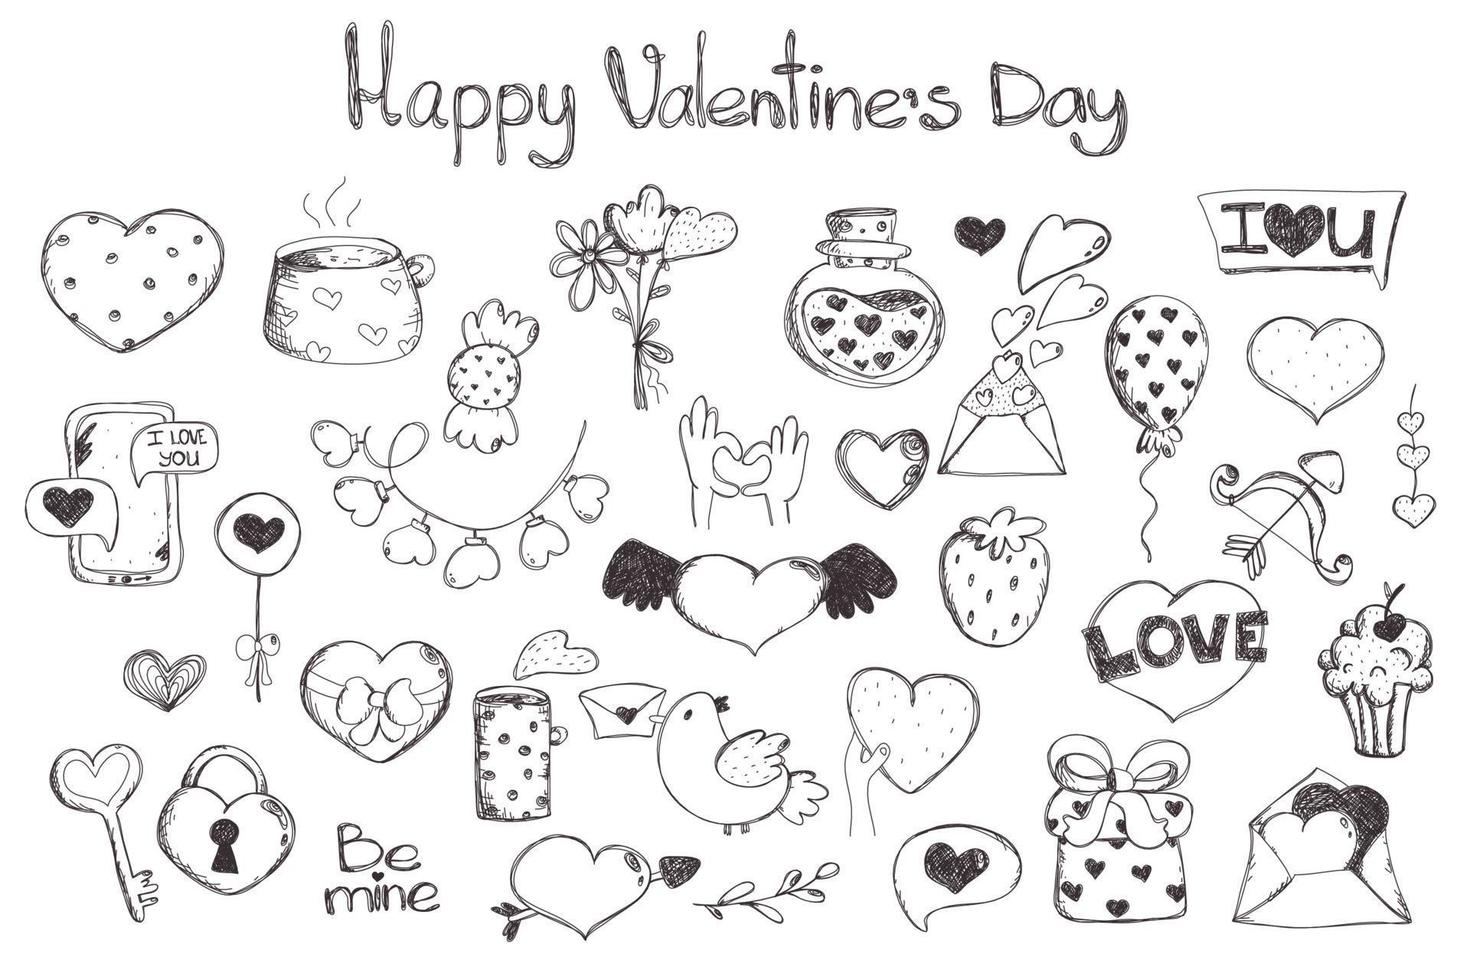 el día de san valentín establece el amor. imágenes prediseñadas de amor. muchos objetos románticos diversos. elementos dibujados a mano sobre el amor. vector